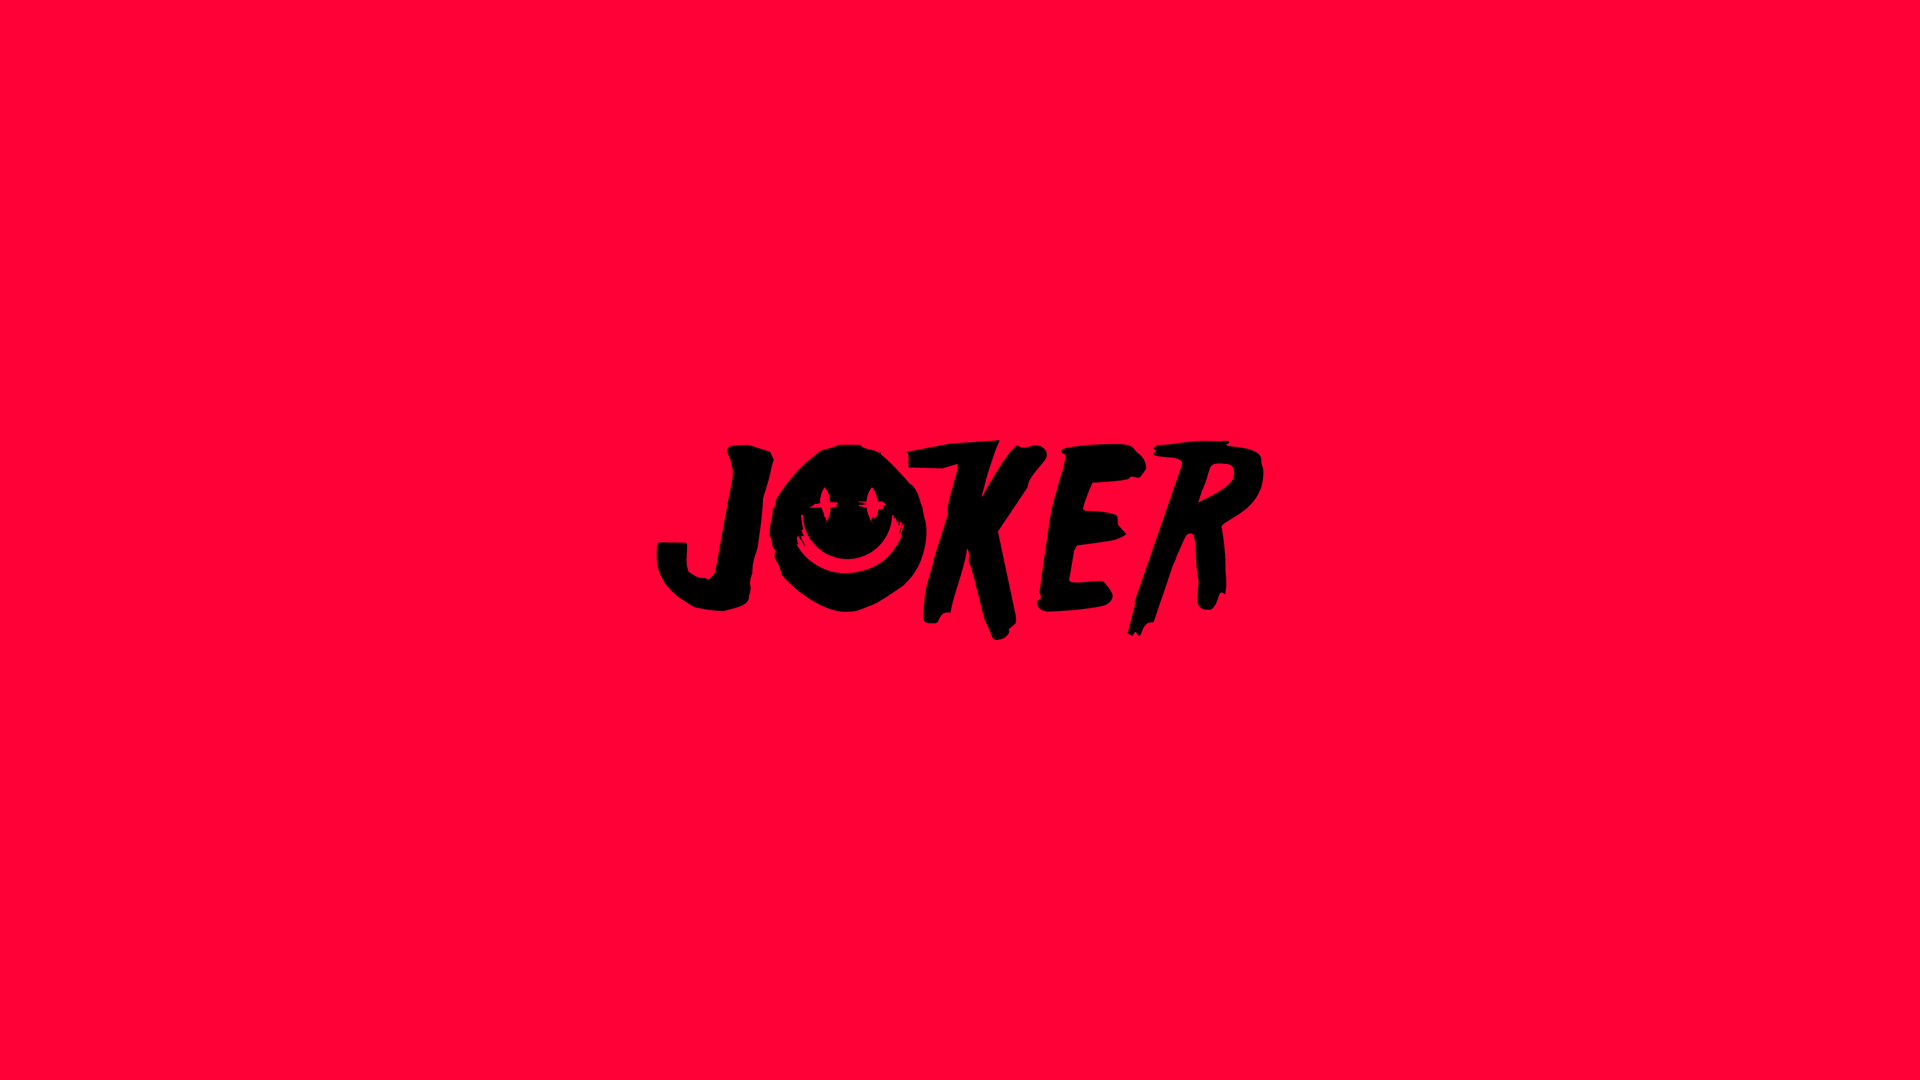 Joker-Wallpaper-5.png